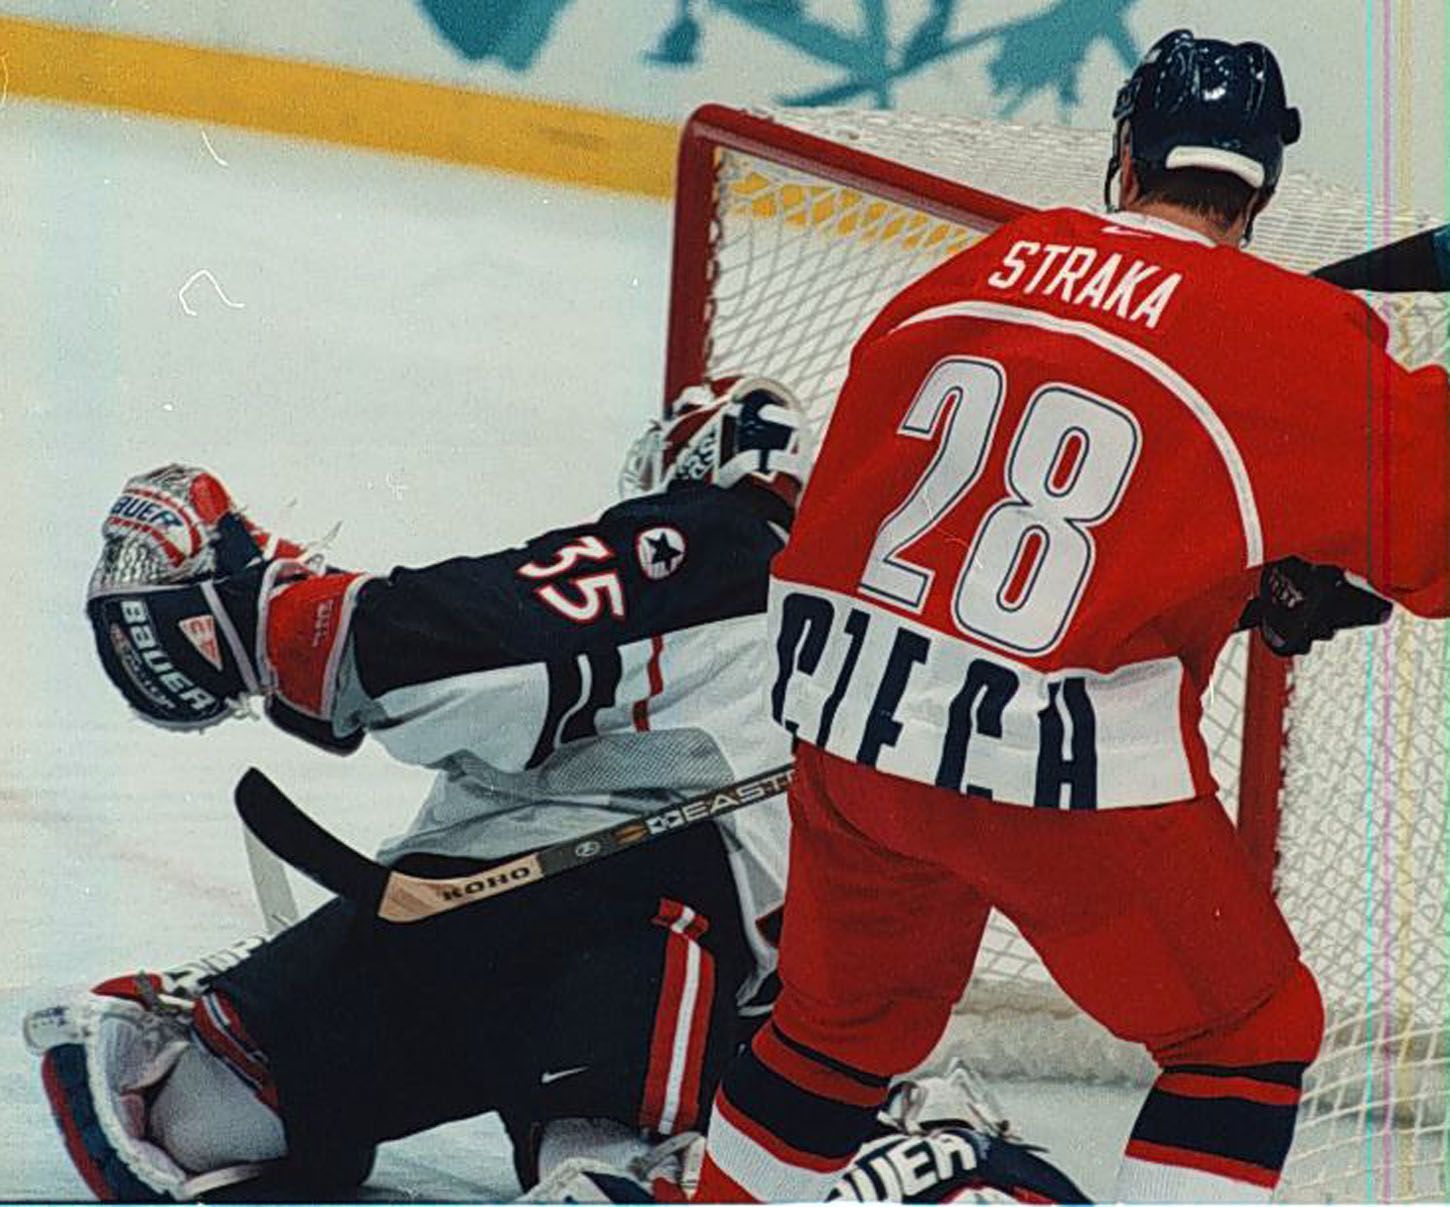 Archivní snímky z ZOH Nagano 1998 - hokej. Martin Straka